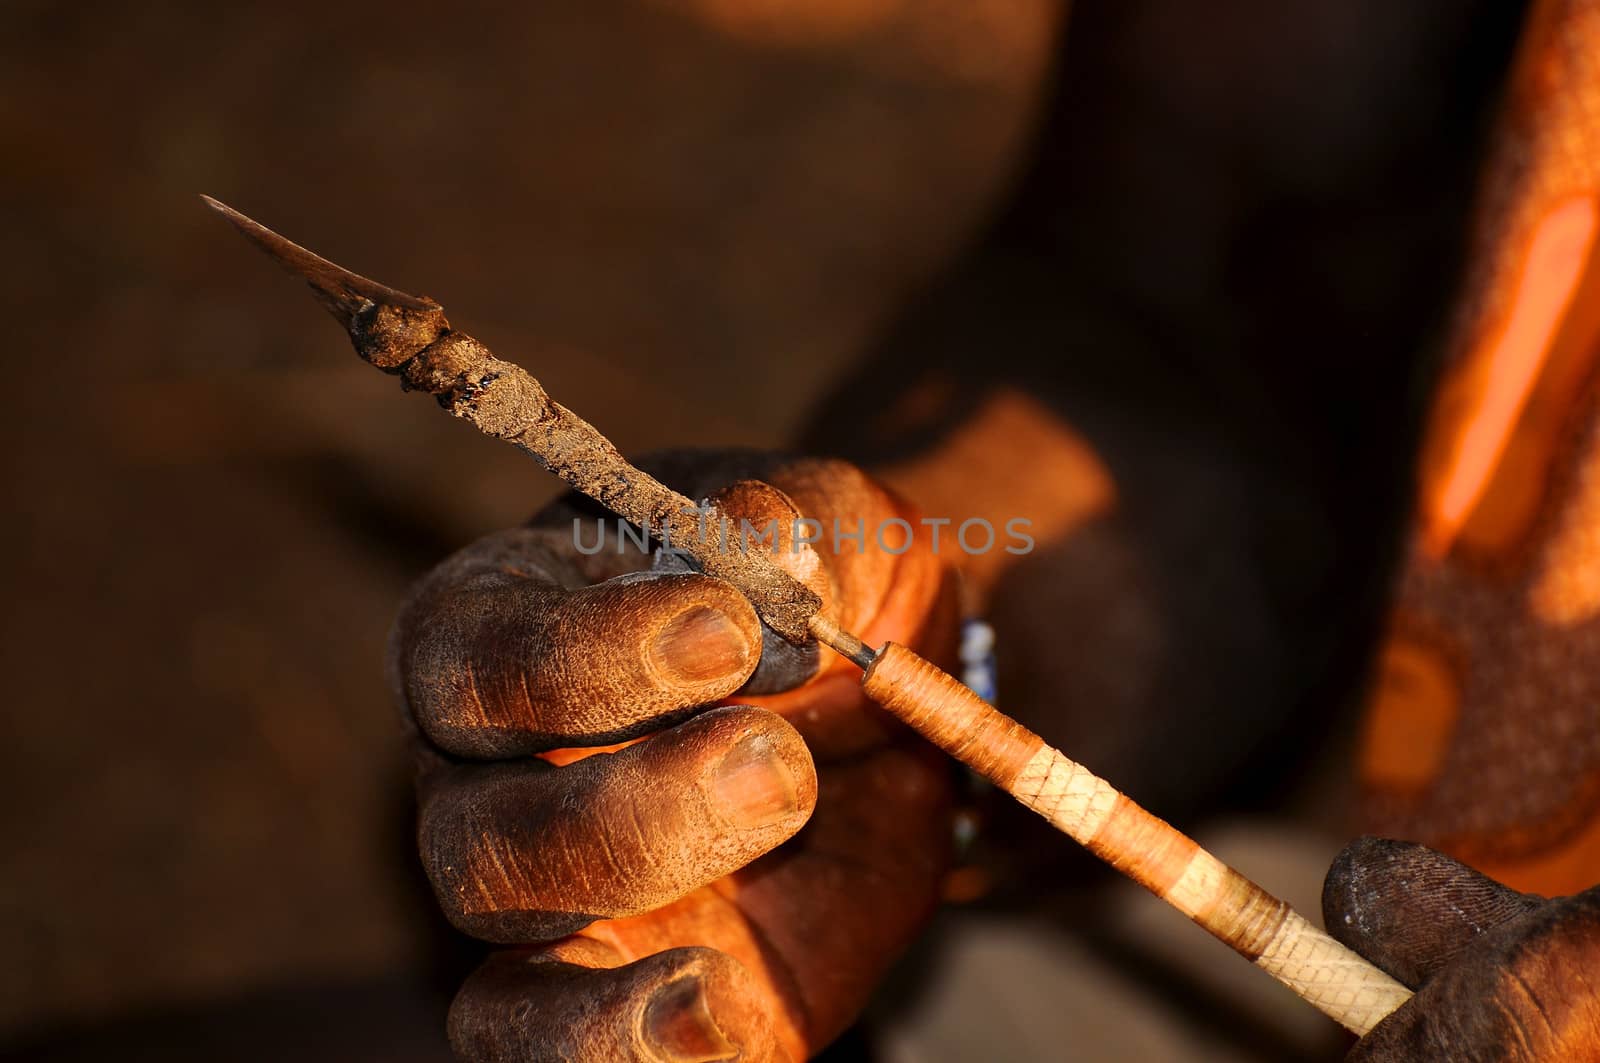 handmade arrow making from Tanzania by moizhusein